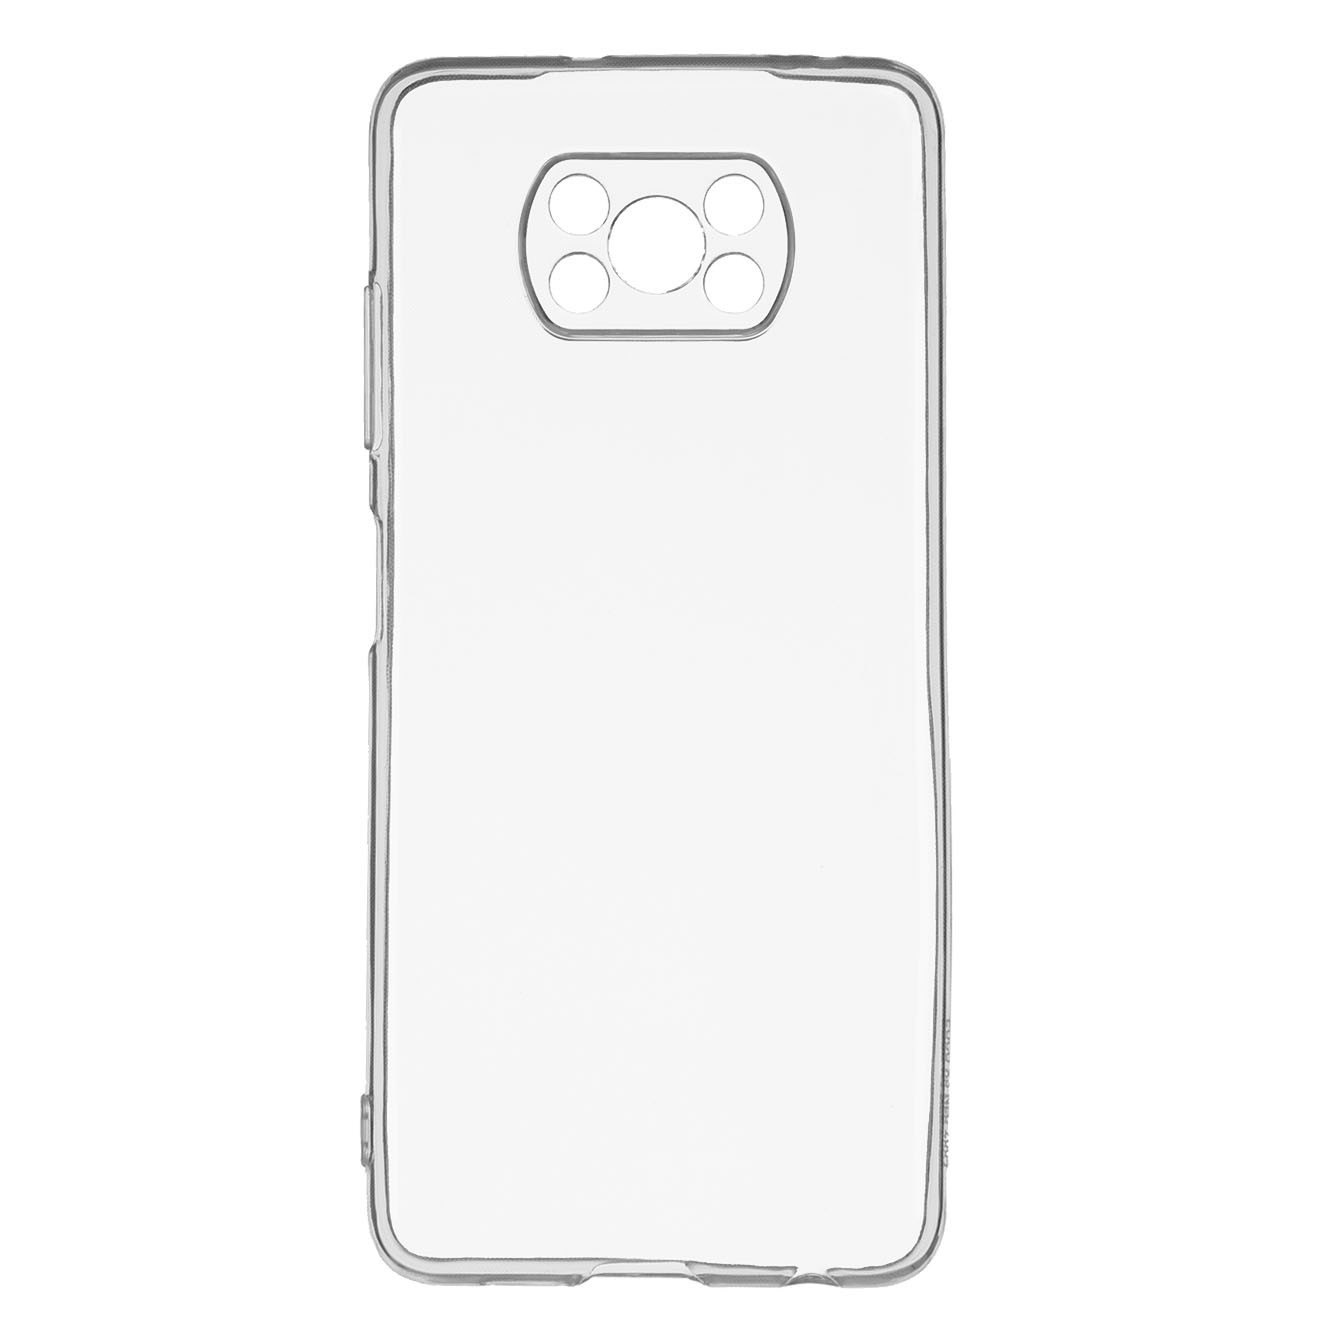 Carcasa Transparente Xiaomi Poco X3 Pro - Carcasa Transparente Funda  Silicona TPU